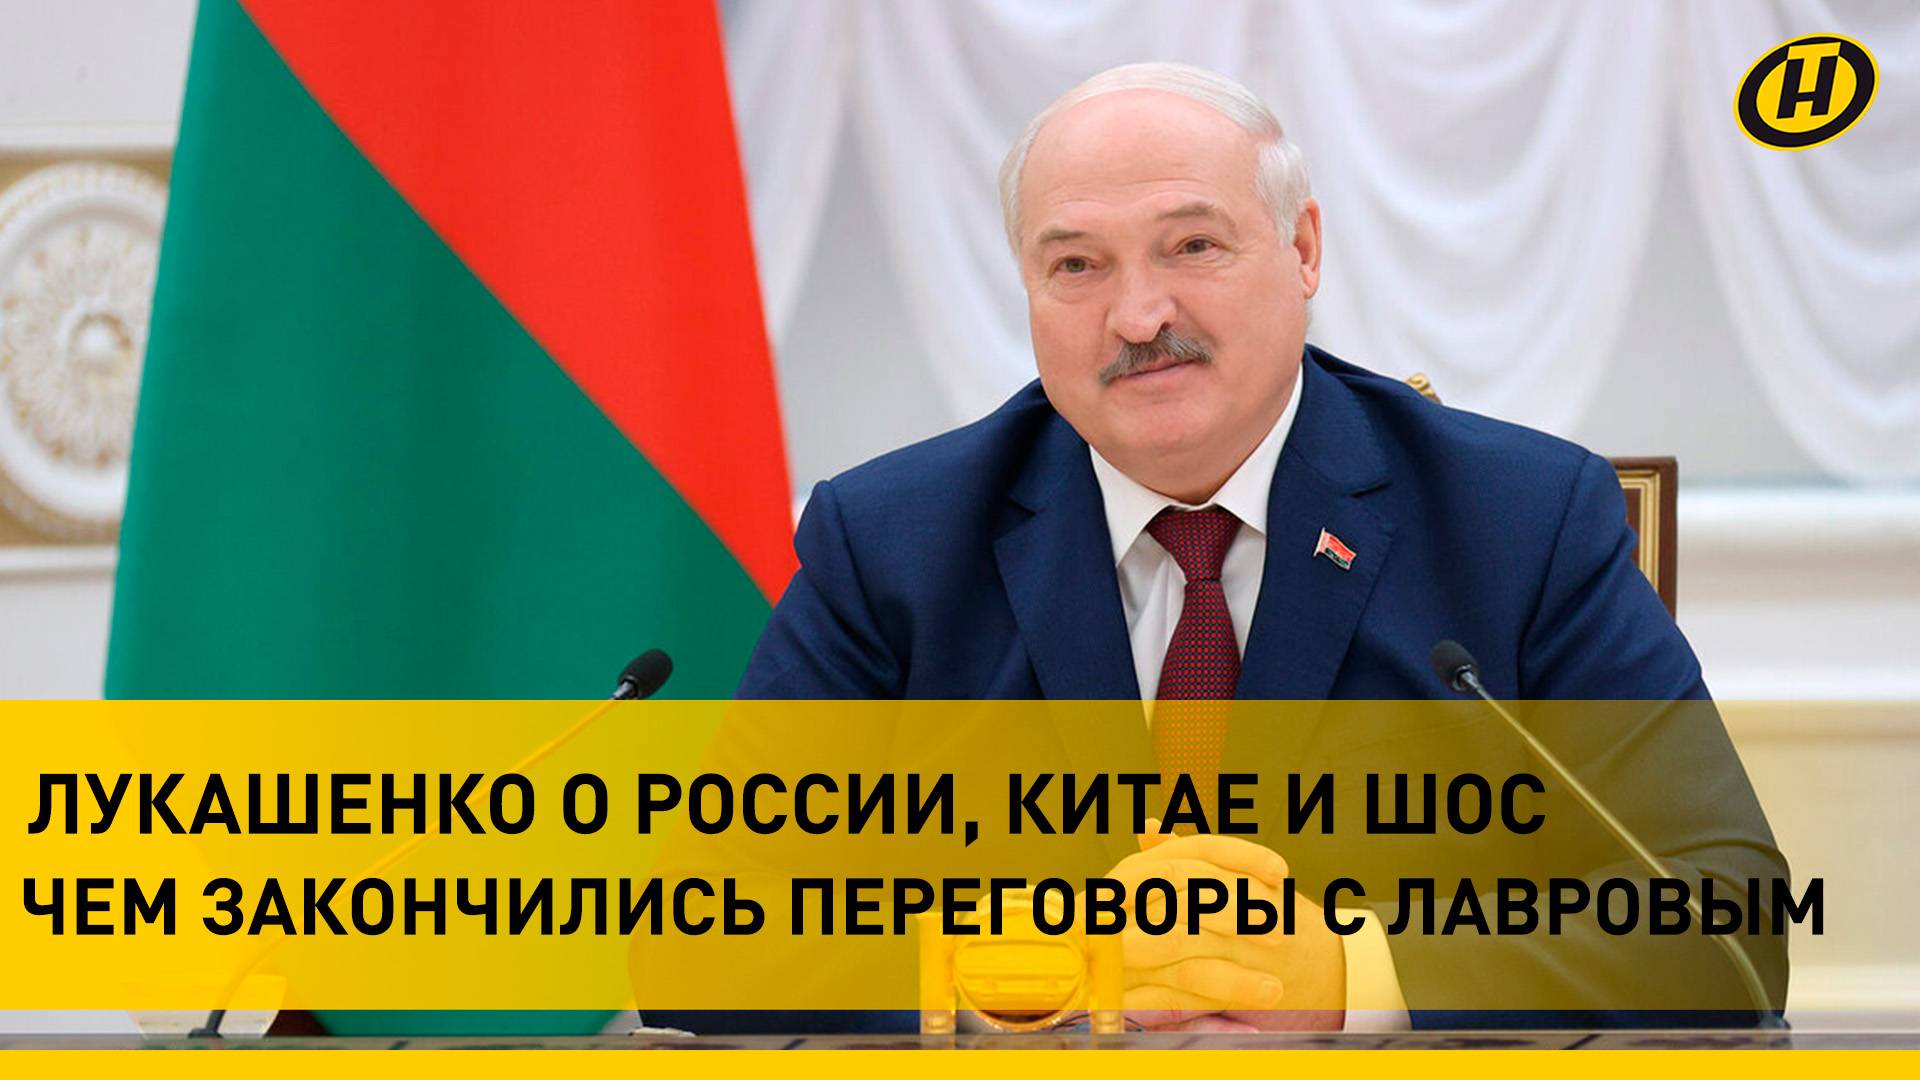 Какие идеи Китая поддержал Лукашенко, о чем говорил с Лавровым и на что будет дан "зеленый свет"